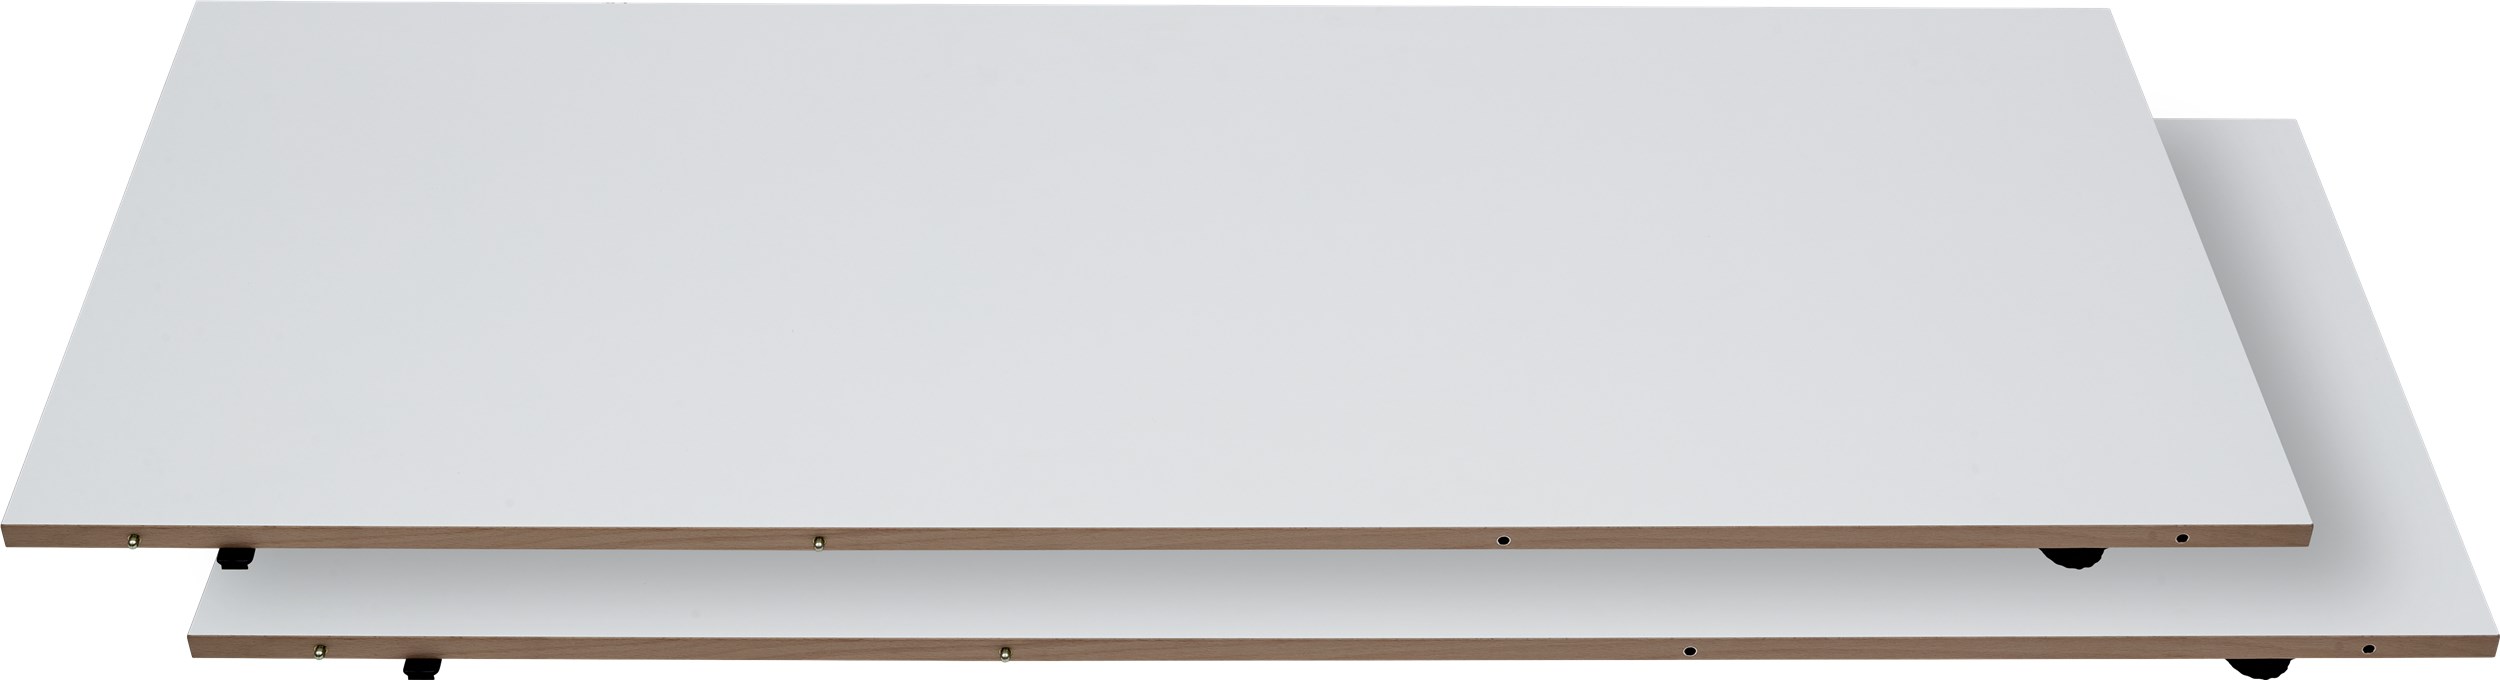 Besalu Tillægsplade 49 x 130 cm - Hvid melamin, kant i hvidpigmenteret lakeret eg og 2 stk.